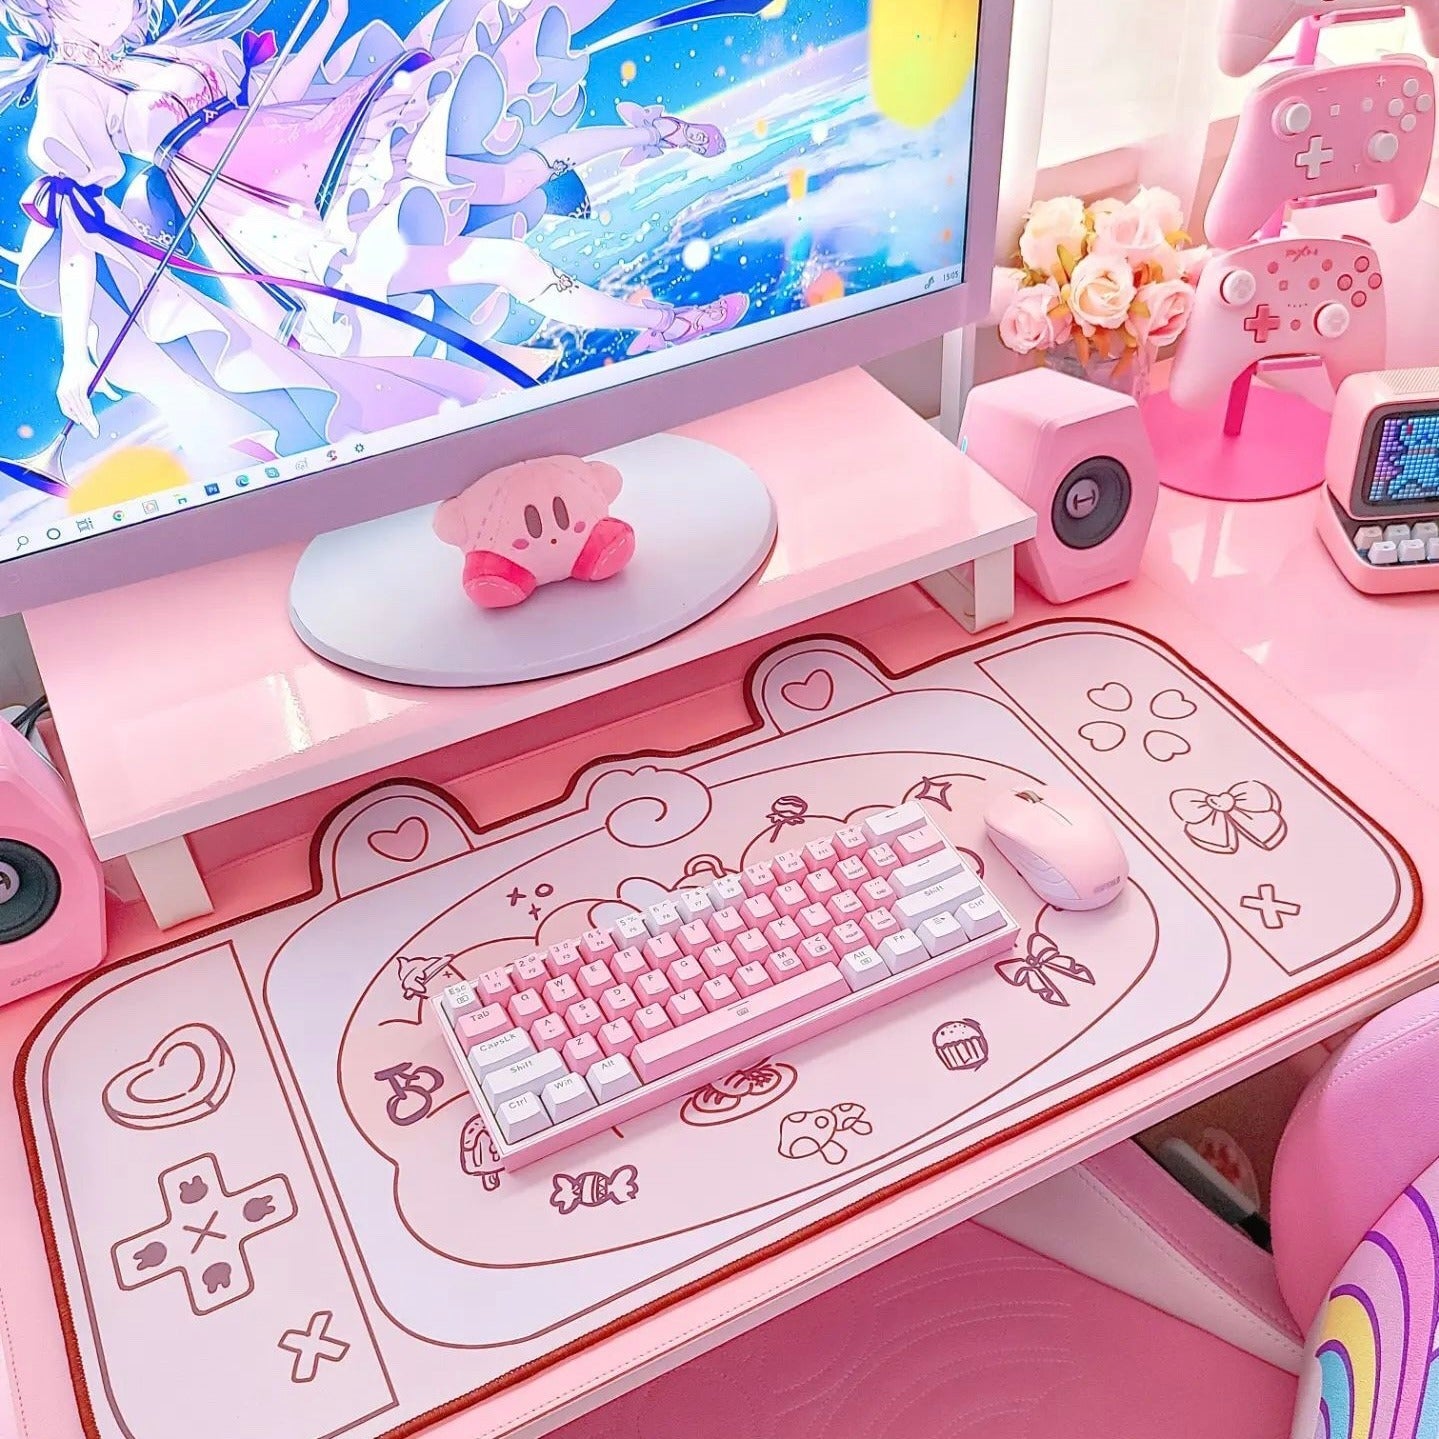 Bunnies Picnic Day Kawaii XL Gaming Mousepad Desk Mat